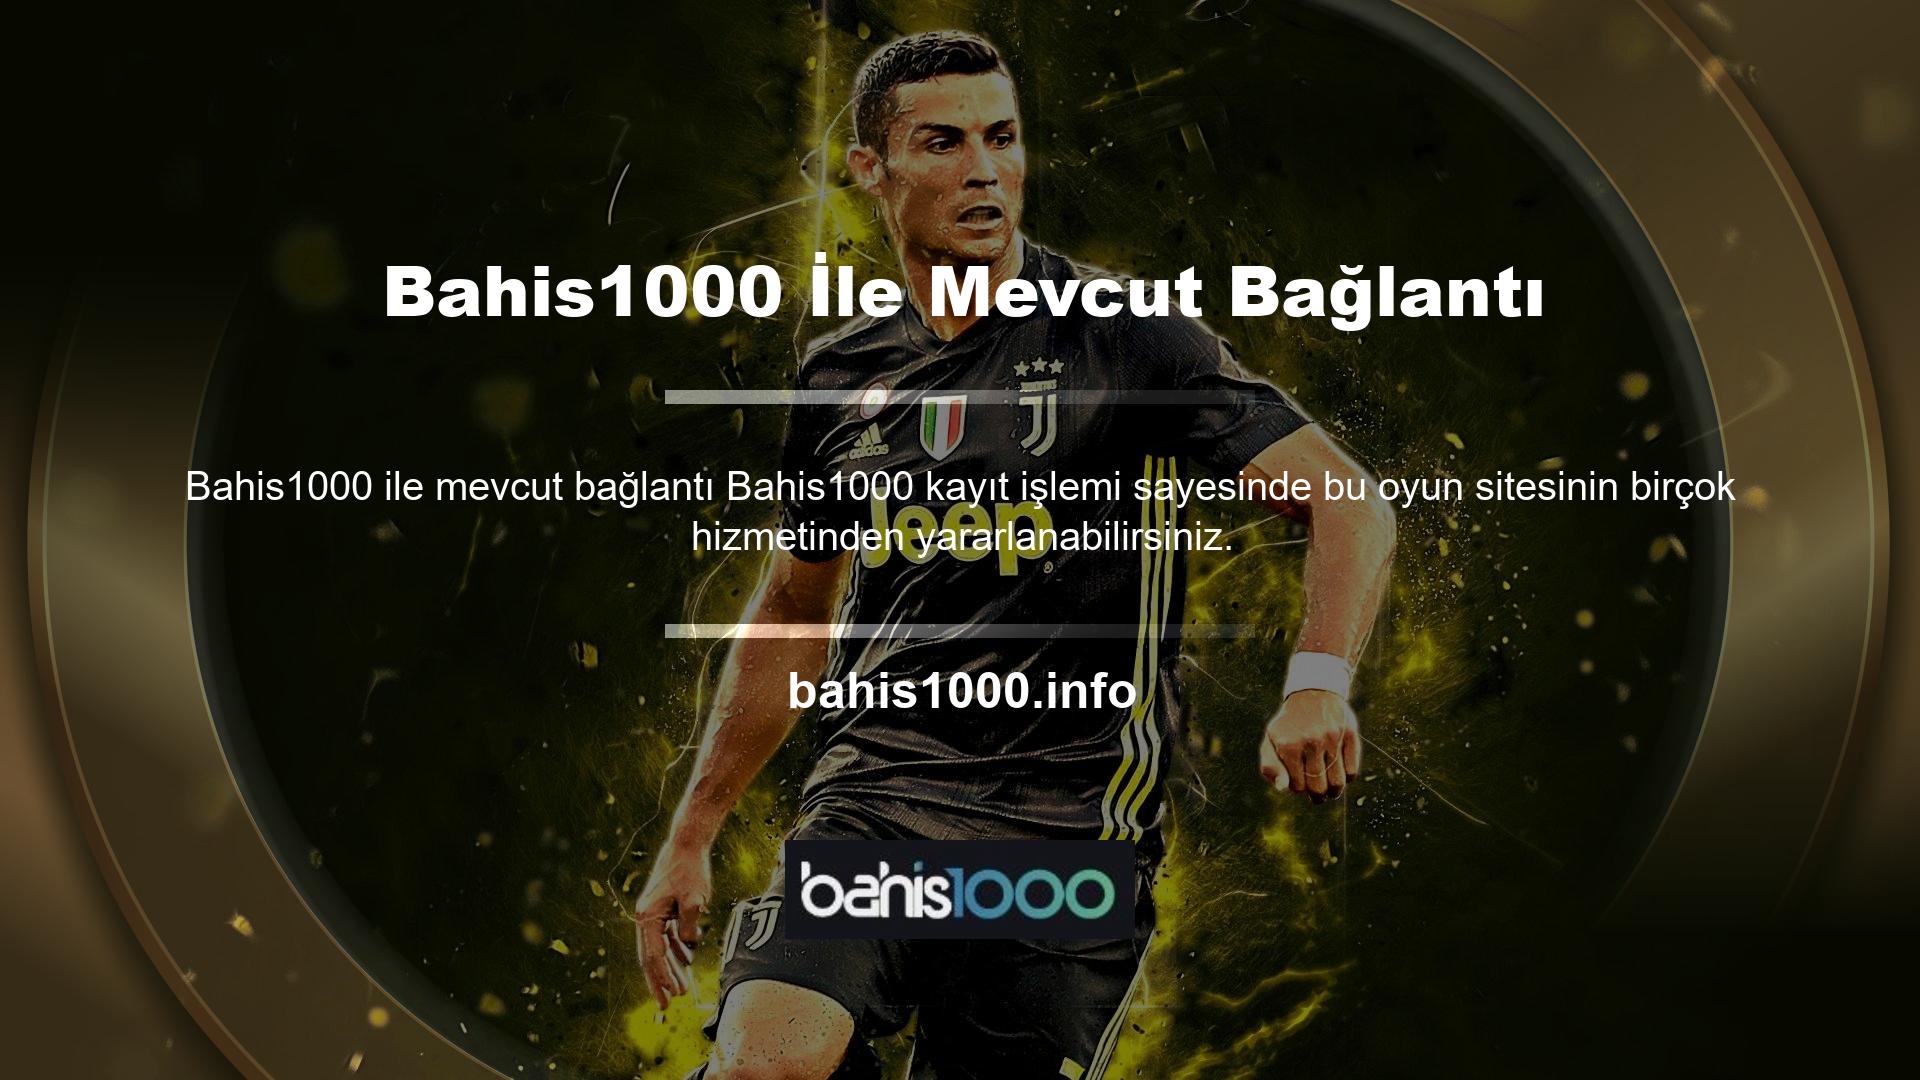 Bahis1000 web sitesi, günümüzde oyun bölümünde çok kaliteli bir hizmet sunan birçok başarılı web sitesinden biridir